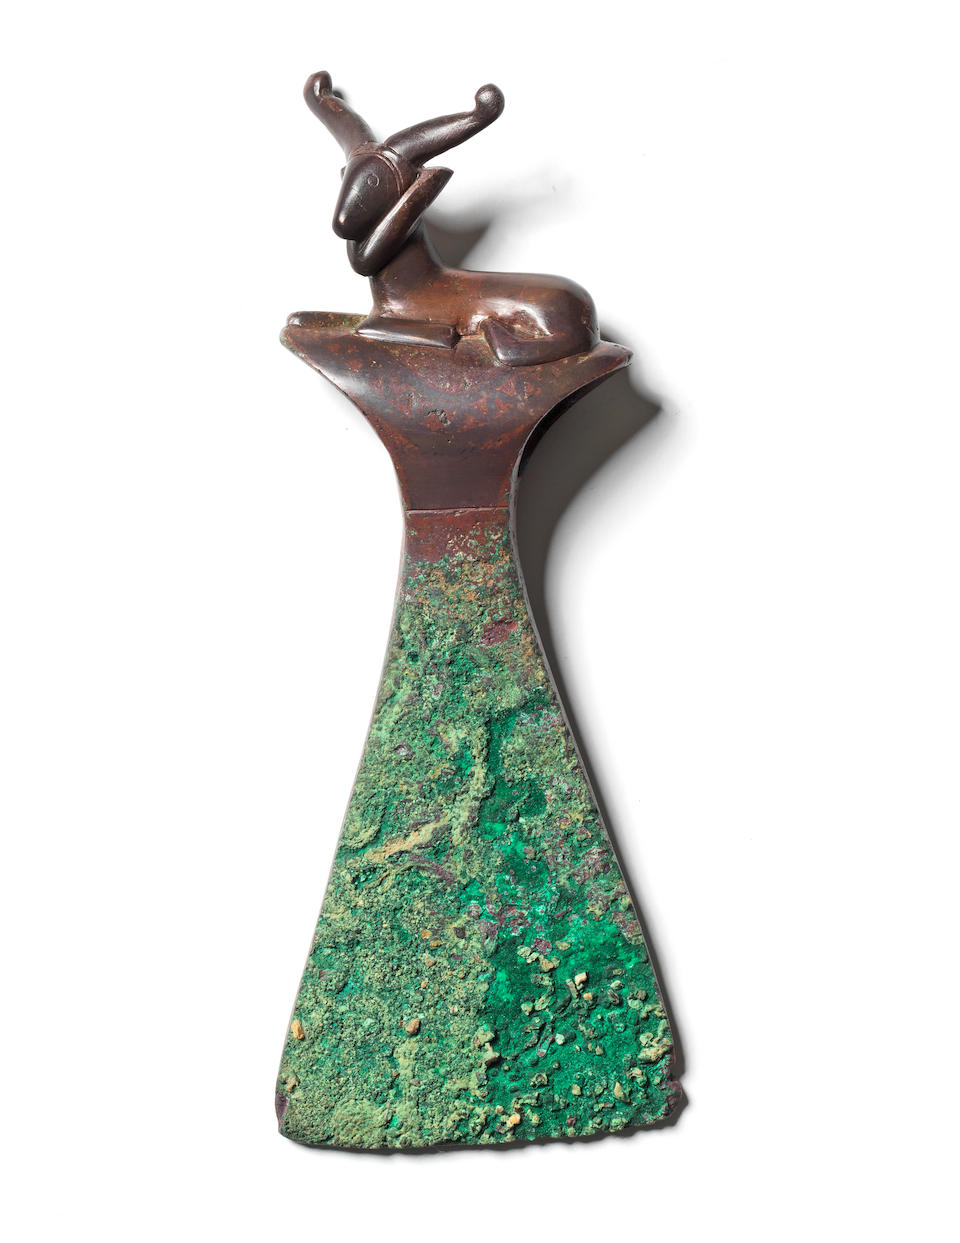 A Bactrian copper axe head